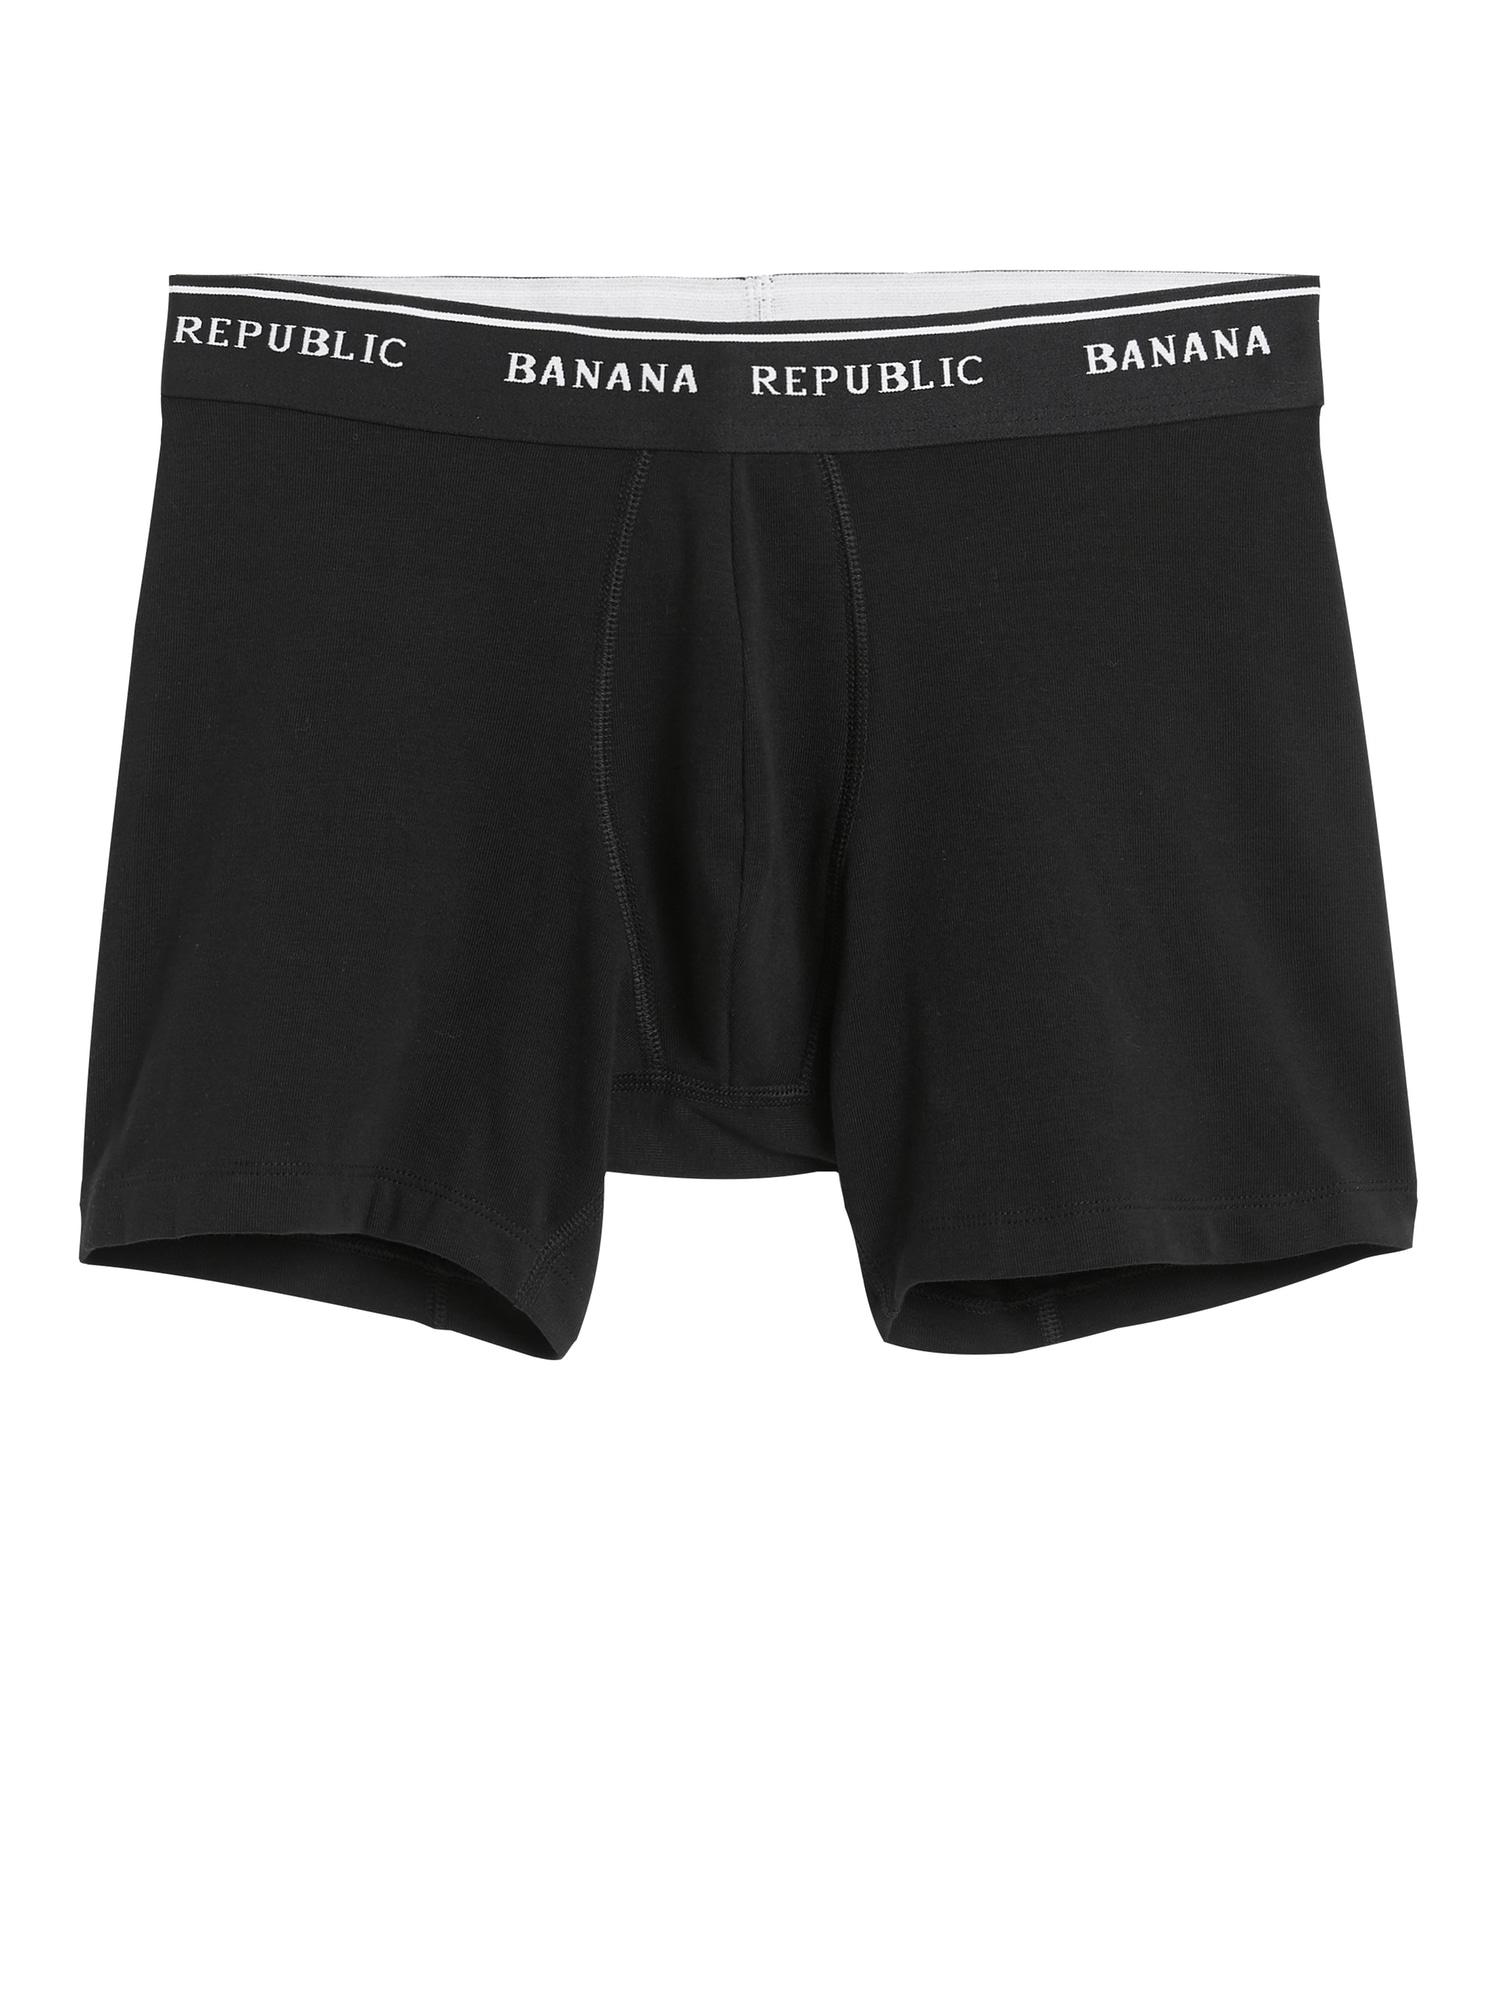 Banana Republic Stretch Supima® Cotton Boxer Brief in Black for Men - Lyst